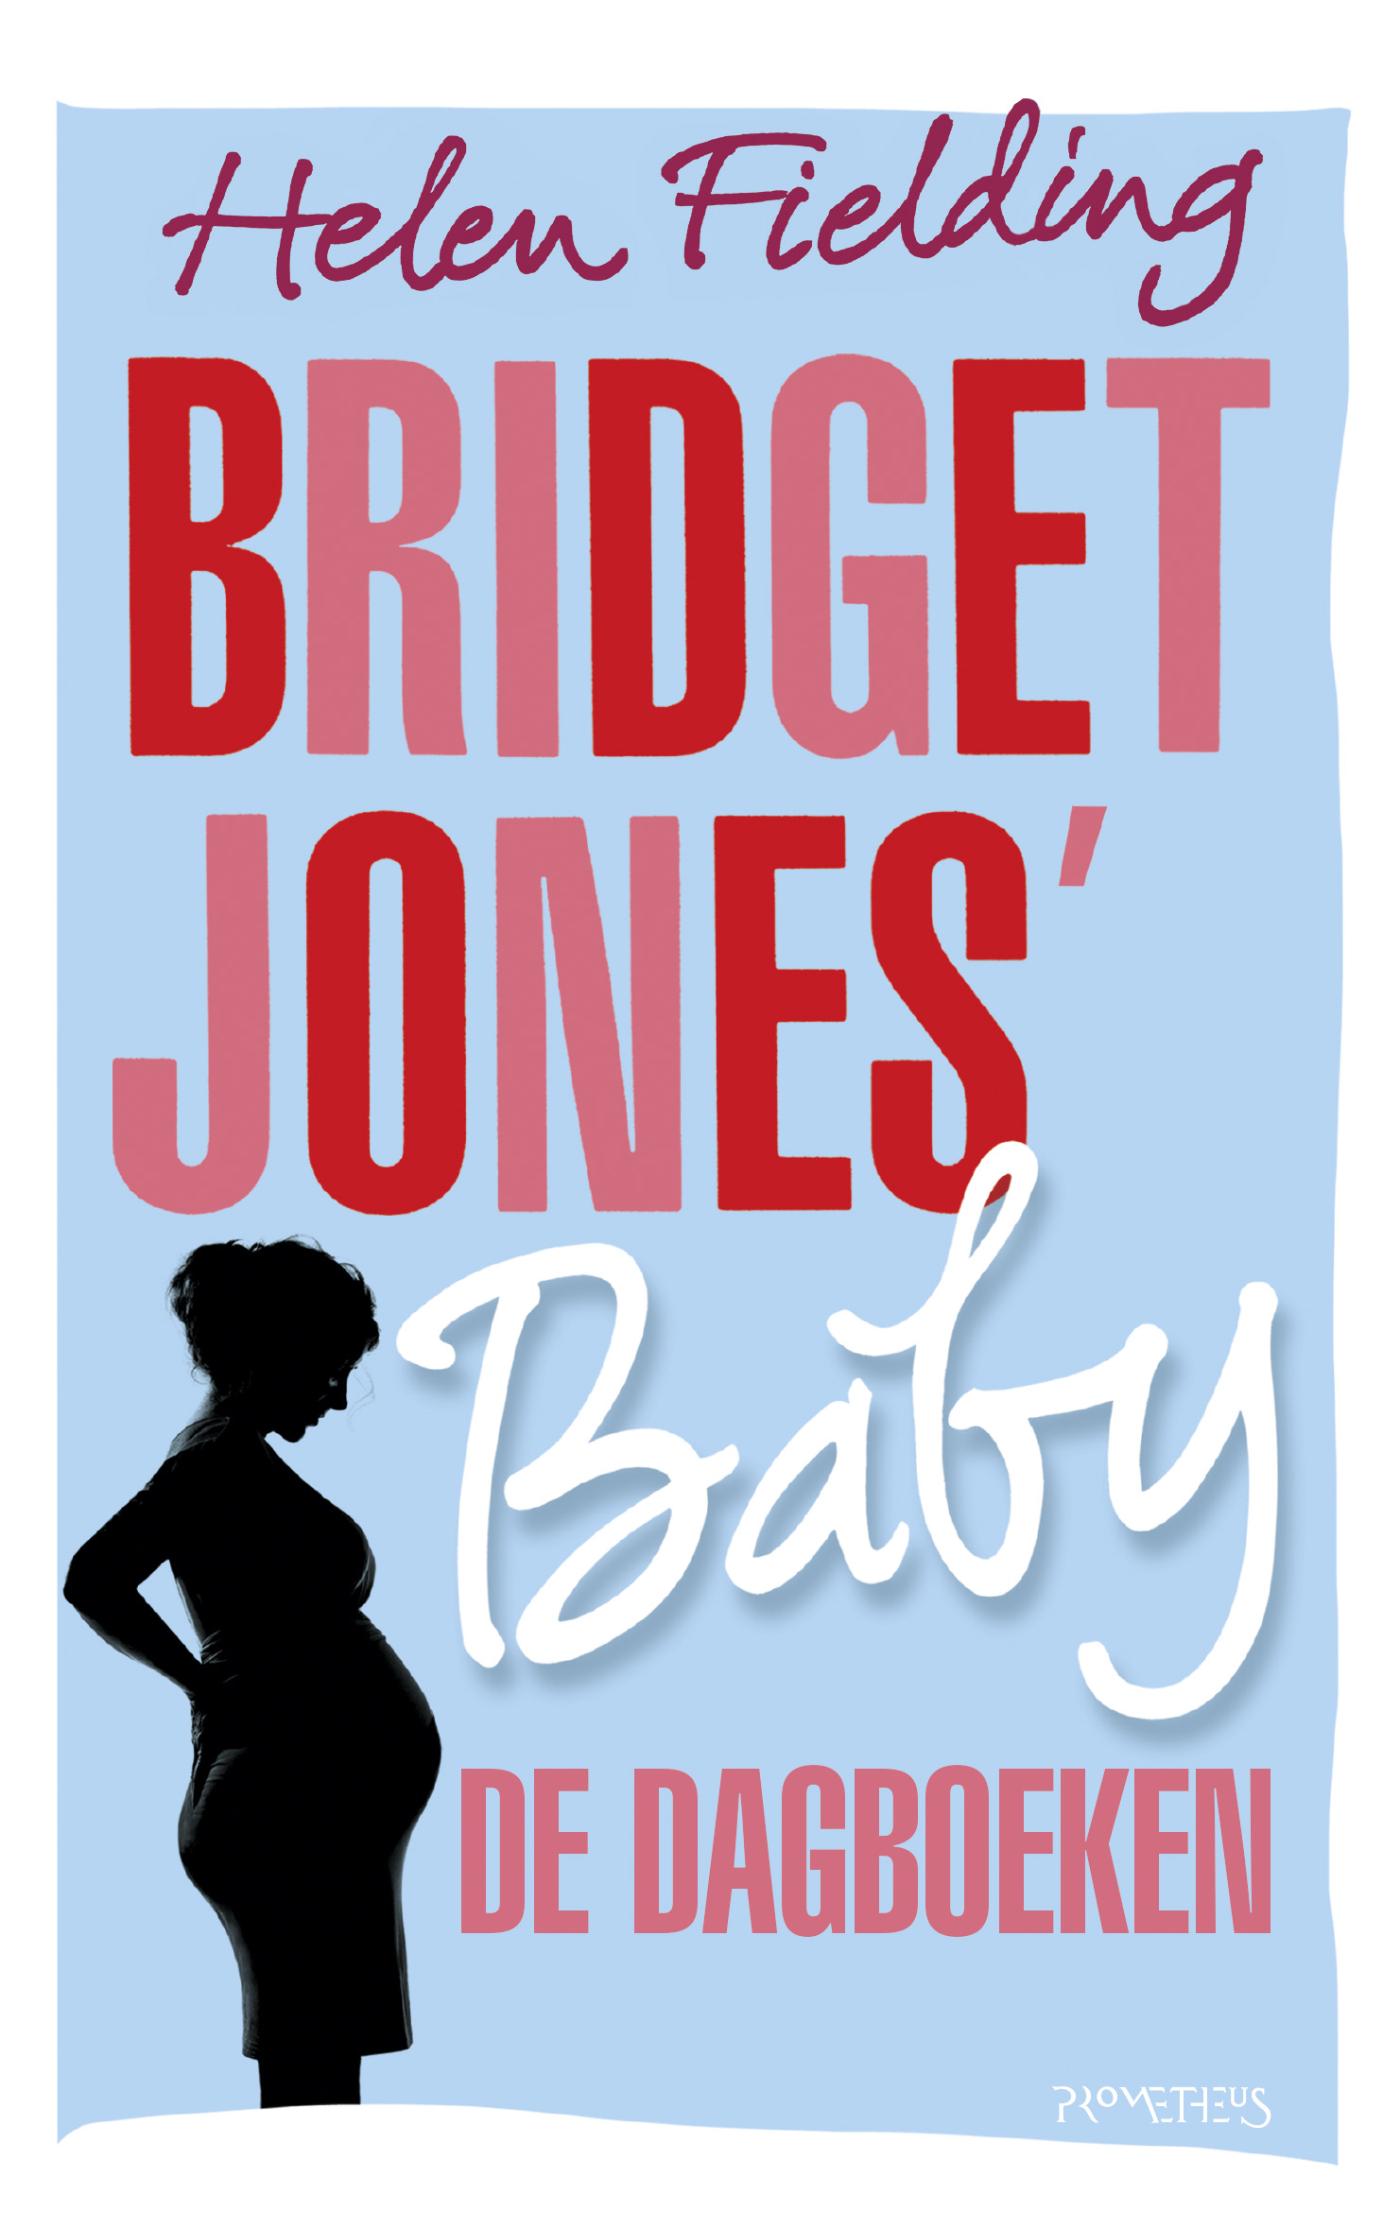 Bridget Jones' baby, de dagboeken (Ebook)